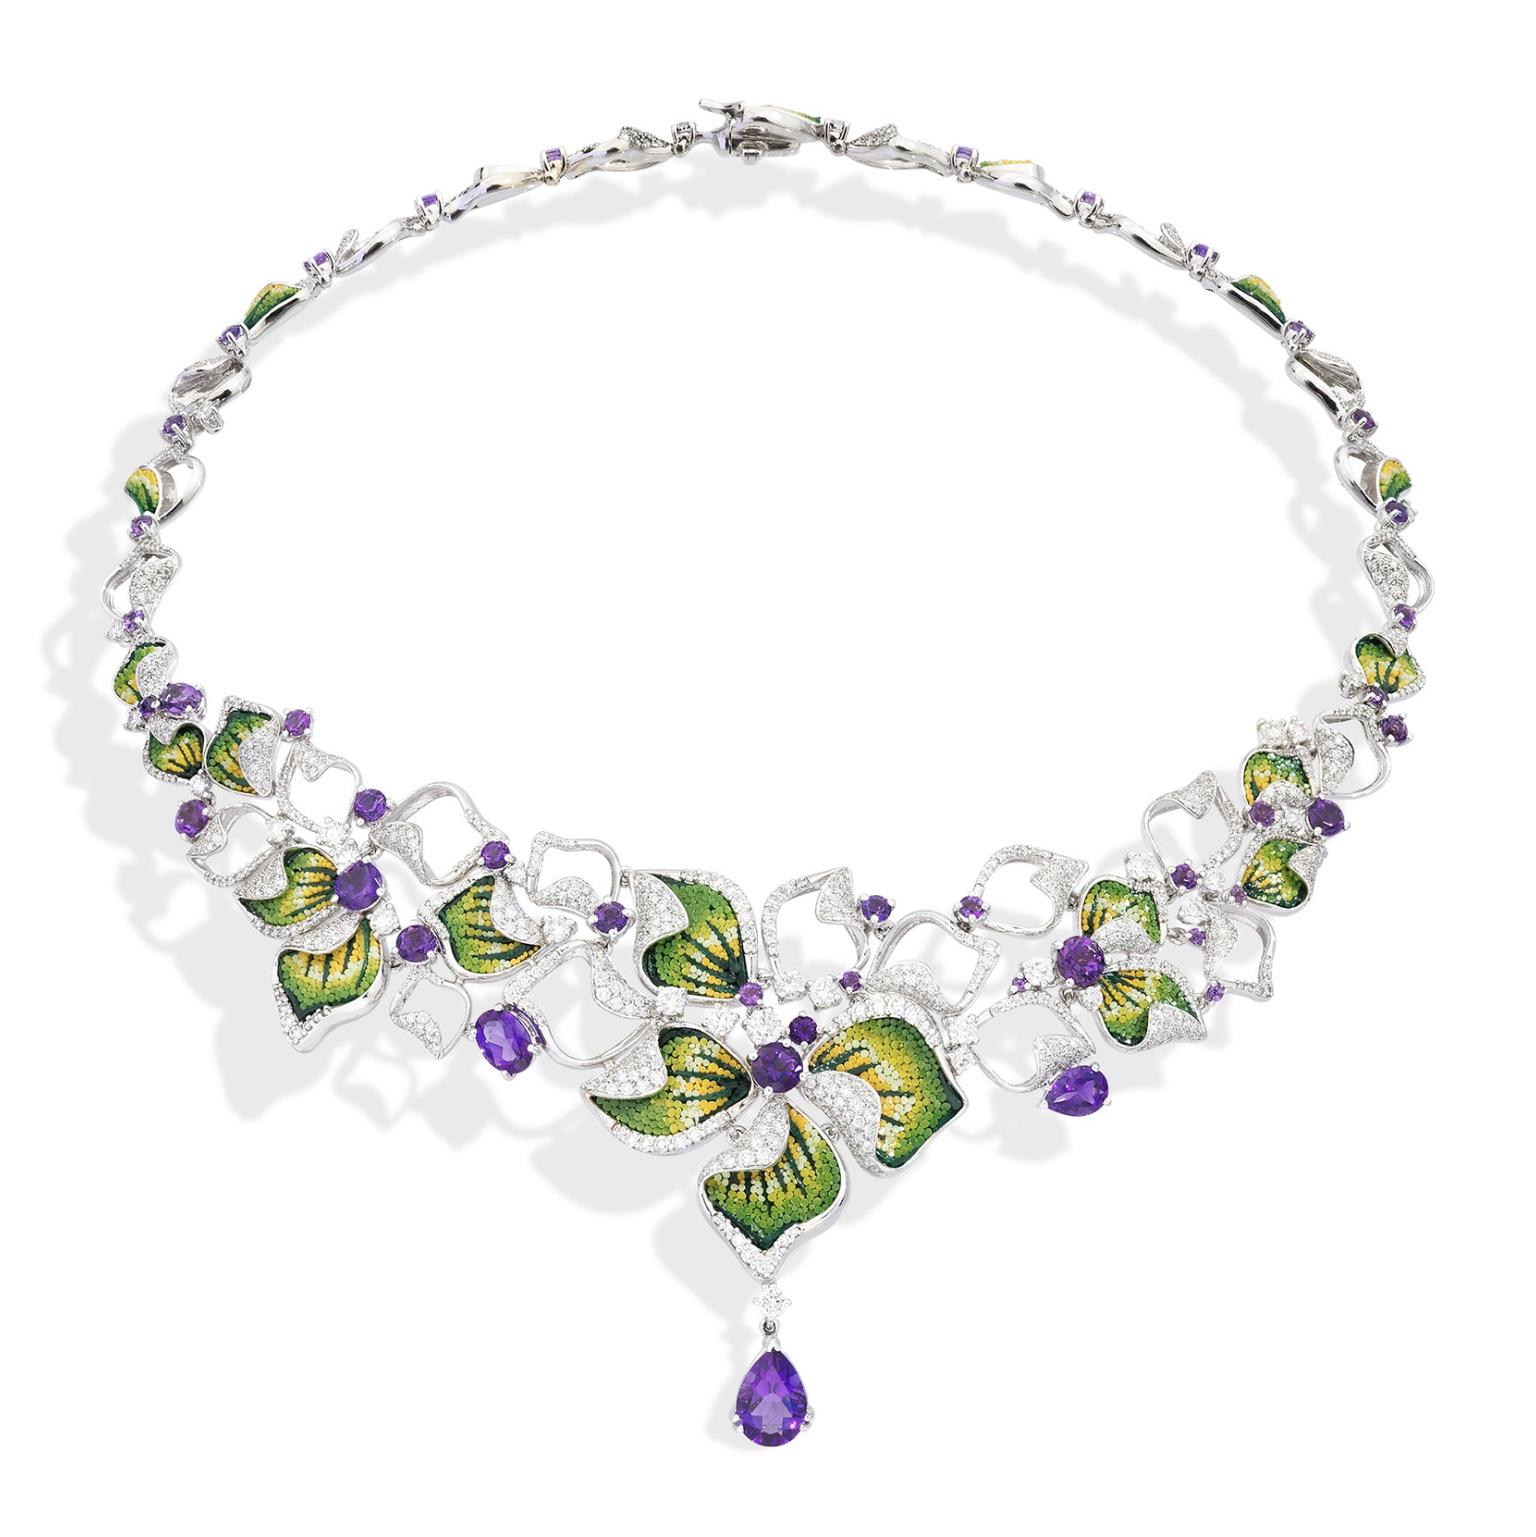 Iris Mauve necklace by Sicis Jewels